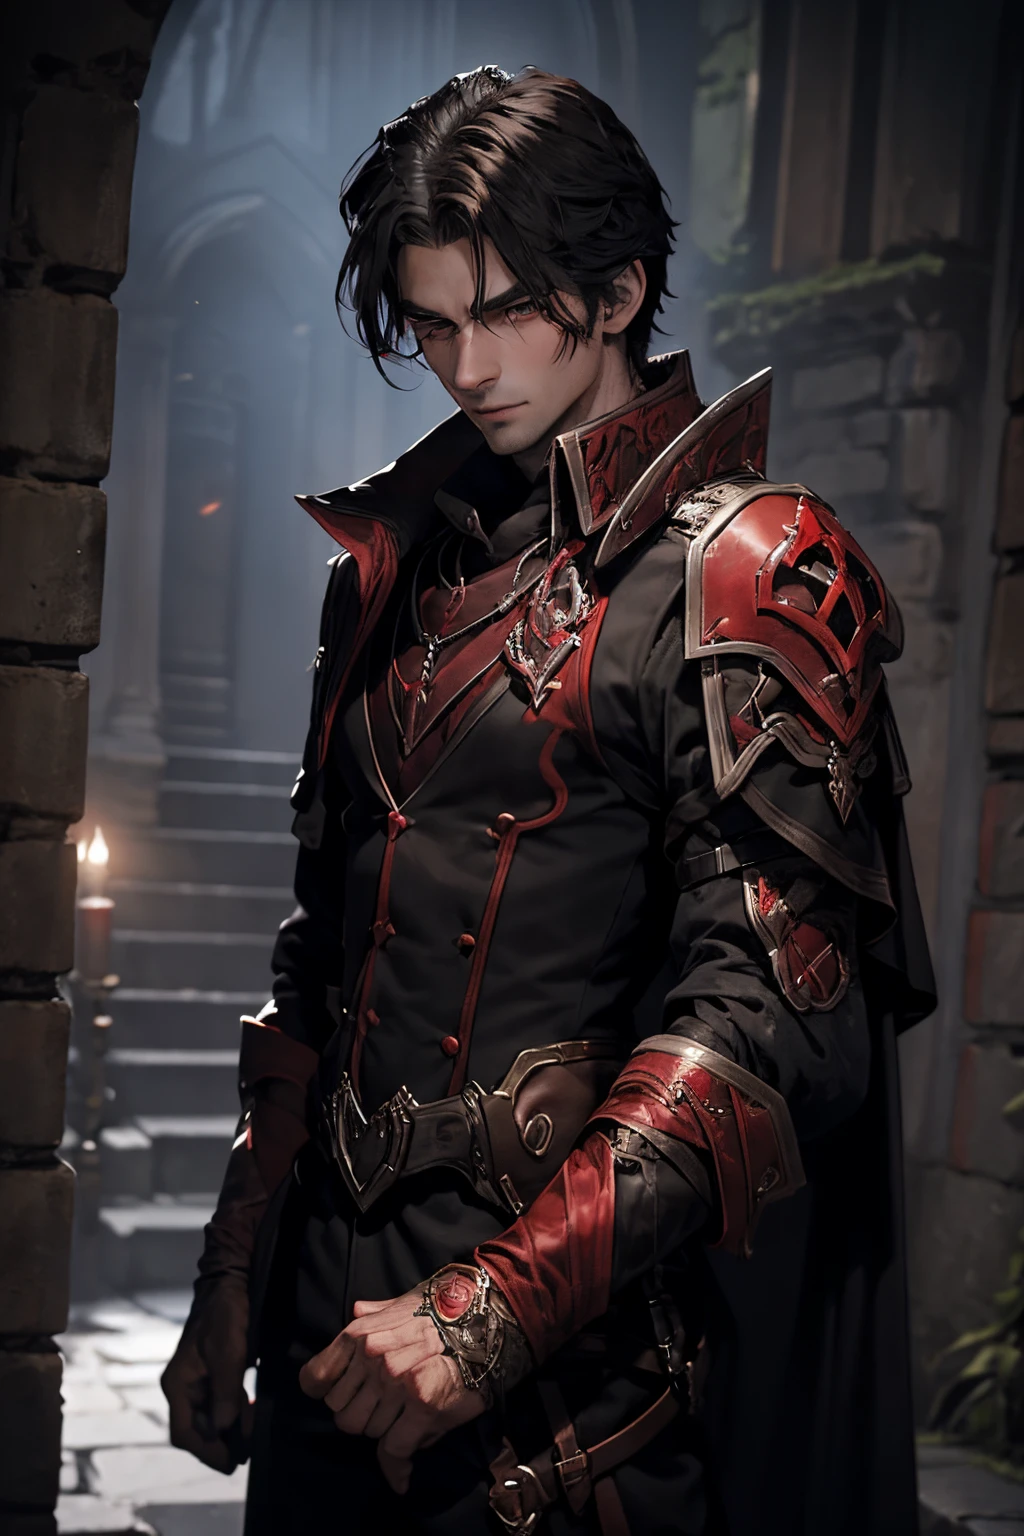 一位庄严的男性吸血血猎人做好了夜间狩猎的准备. 想象一个具有明显吸血鬼特征的角色, 身着深黑红铠甲，手持两柄血红色长剑